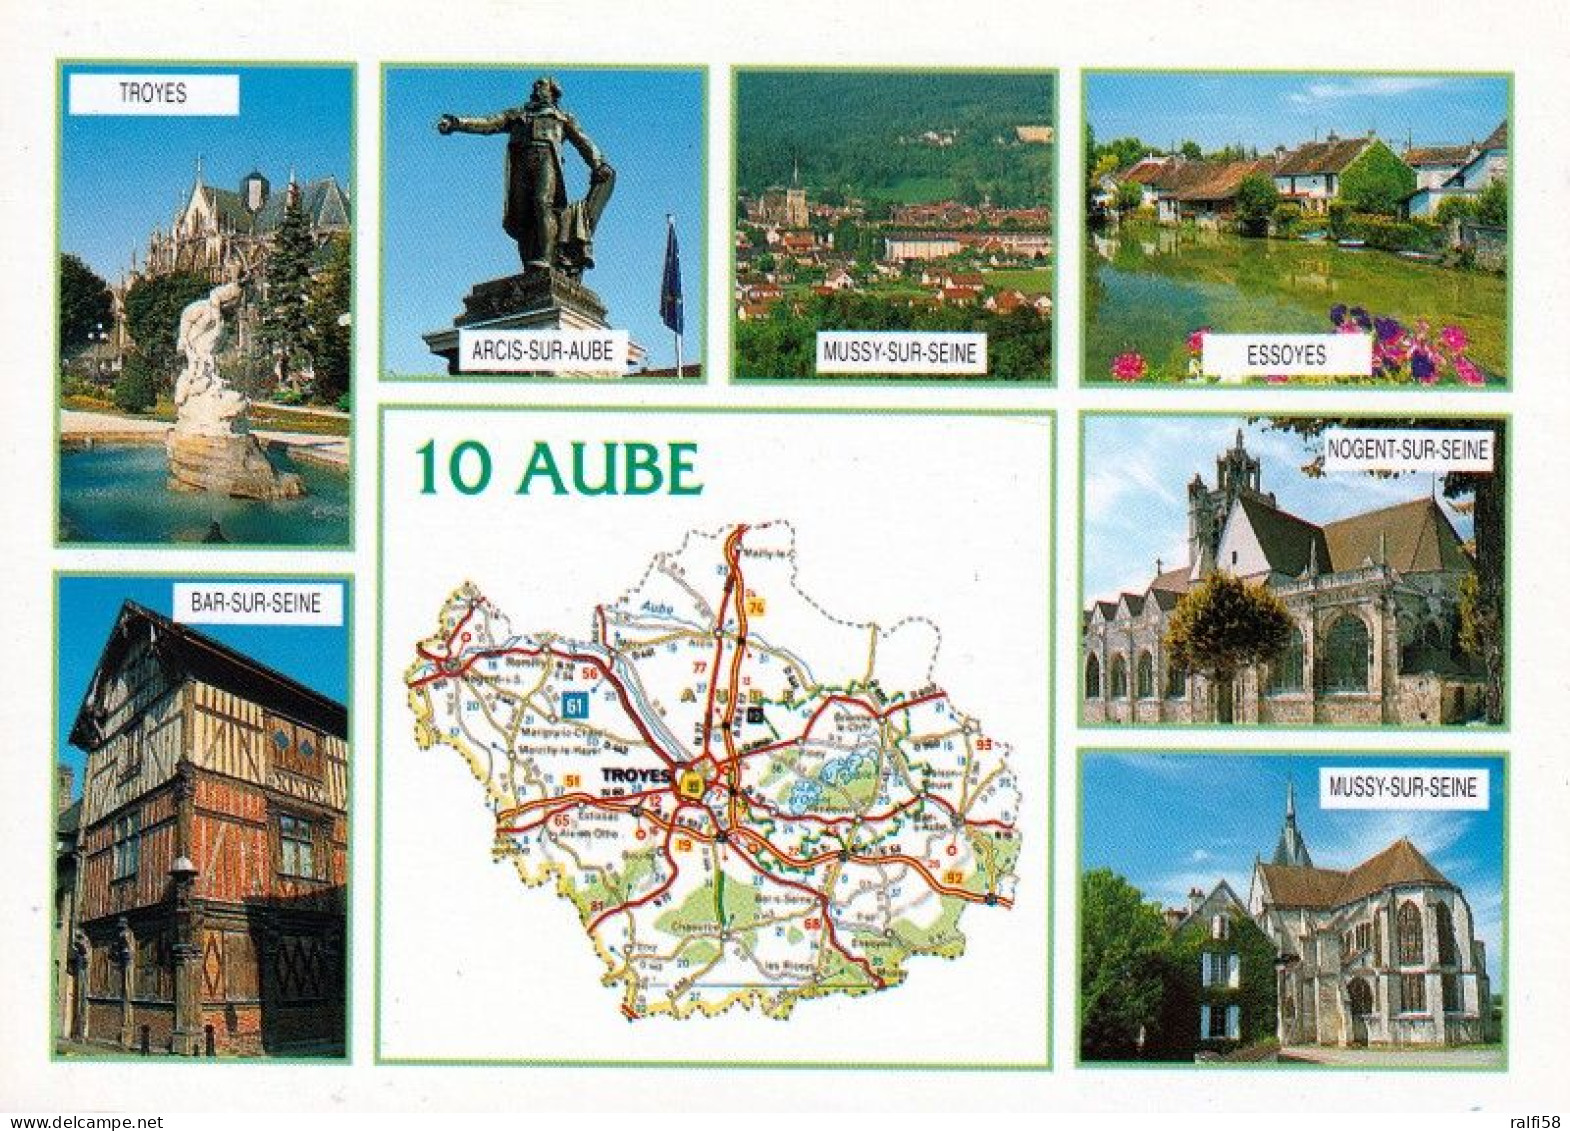 1 Map Of France * 1 Ansichtskarte Mit Der Landkarte - Département Aube - Ordnungsnummer 10 * - Maps